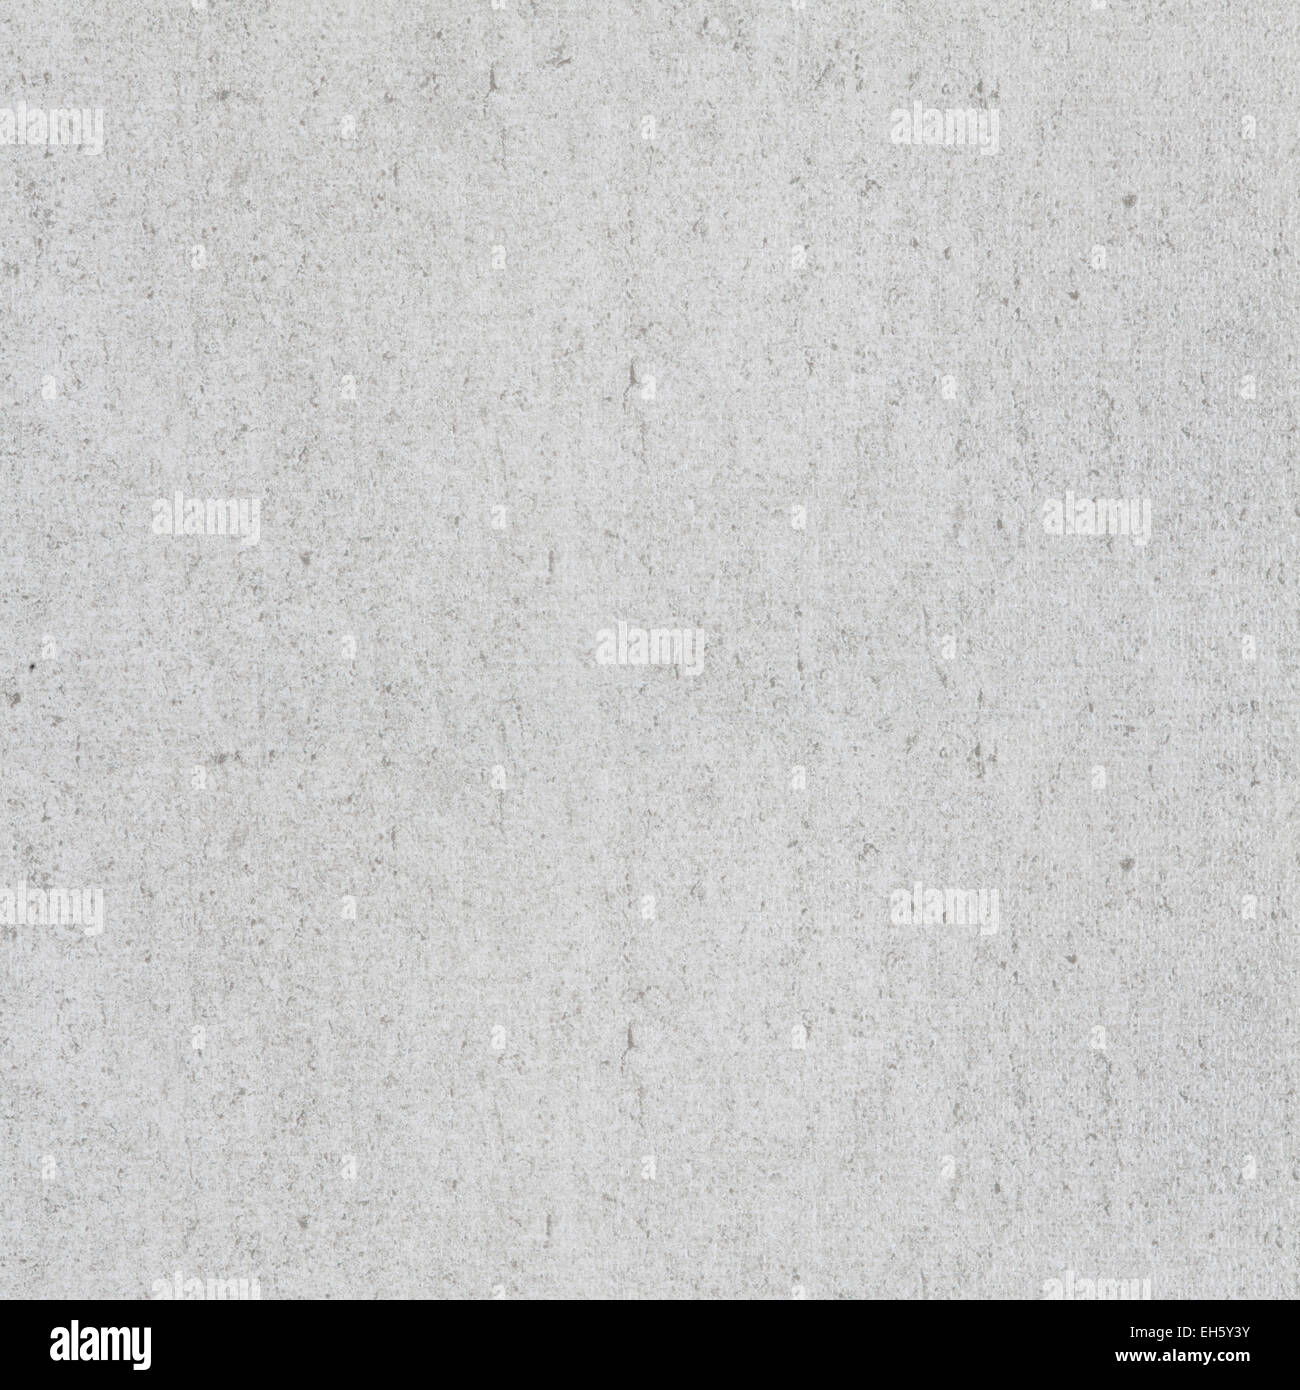 La texture ou motif rugueux blanc fond gris abstrait Banque D'Images